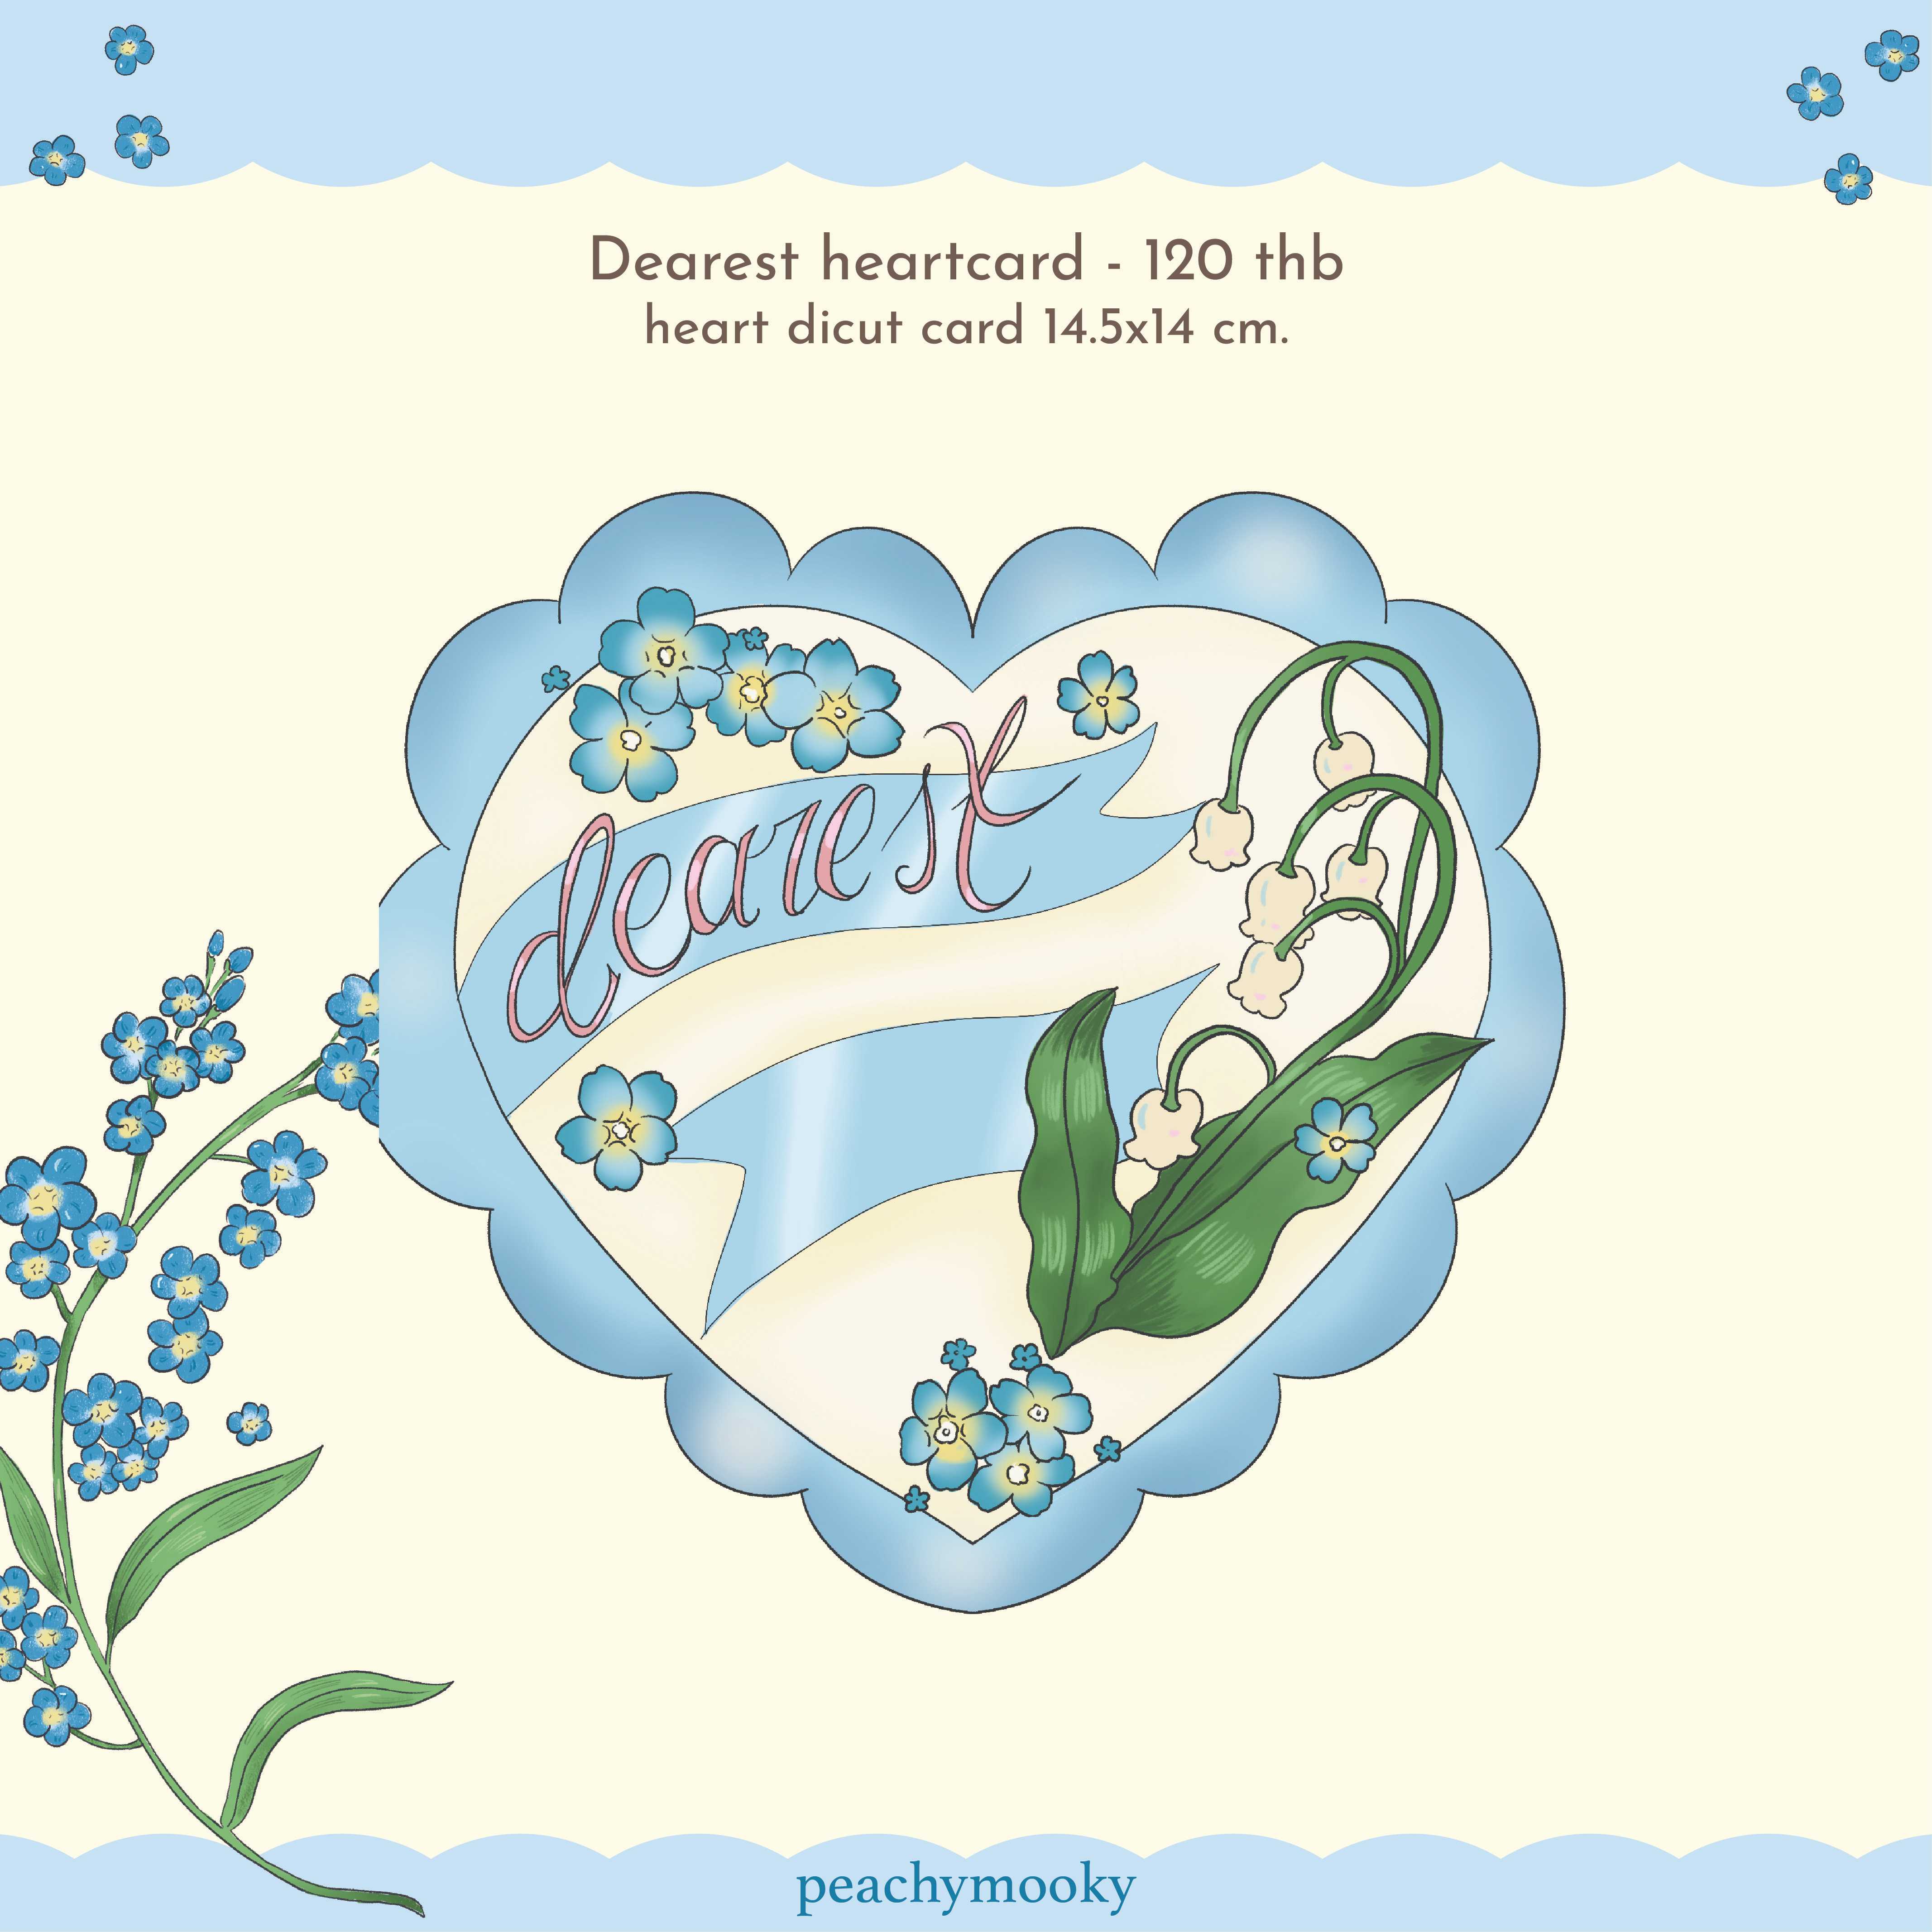 Dearest heart card